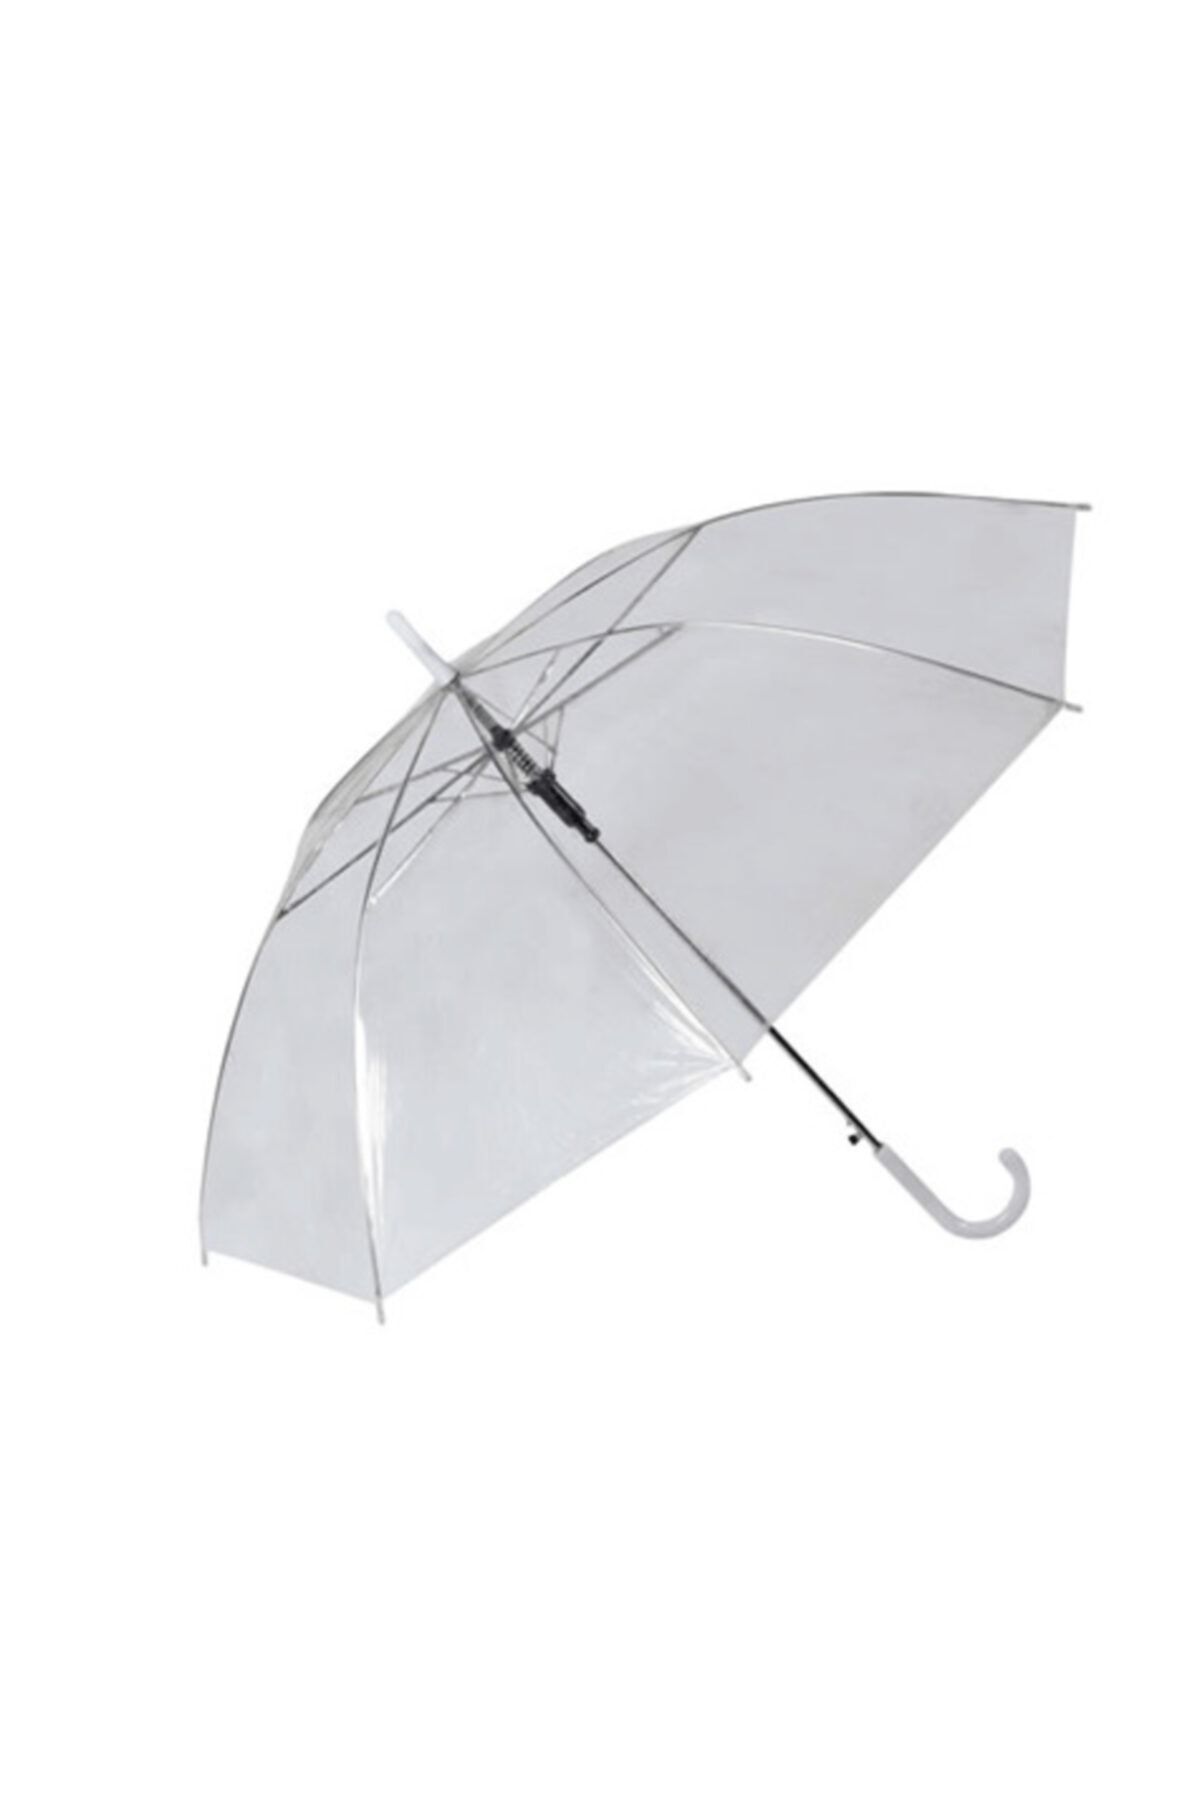 FırsatVar 2 Adet Erkekler Için Şeffaf Yağmurluk Tam Otomatik Şemsiyes